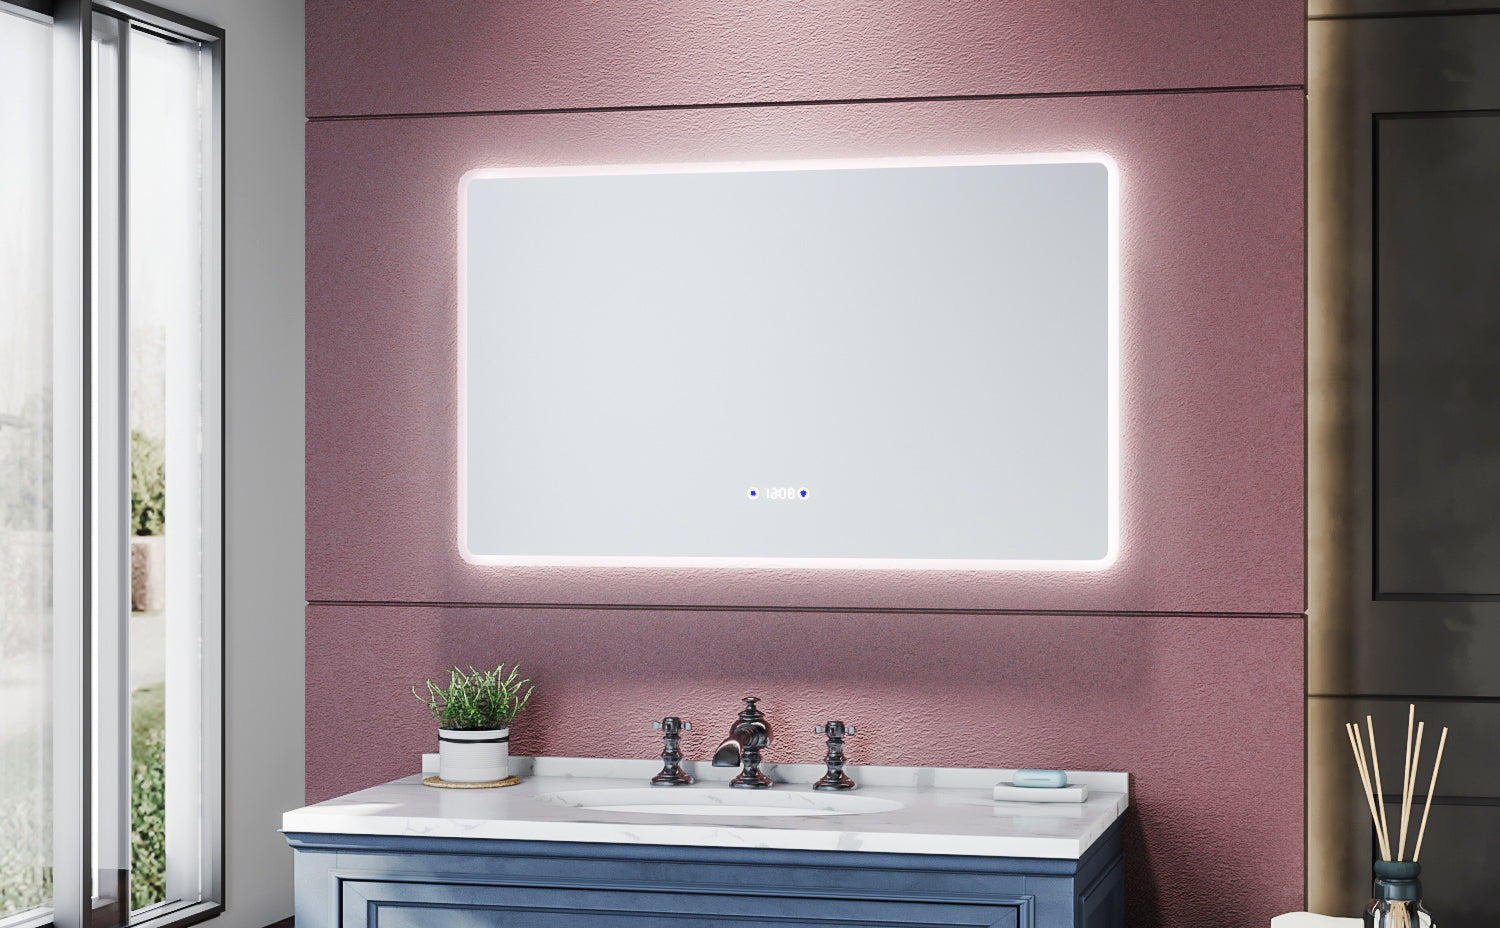 SIRHONA Miroir de salle de bains 1000 x 600 x 35mm - Miroirs cosmétiques muraux - Miroir avec led illumination - Trois températures de couleur - Antibuée avec réglage de l'heure - SIRHONA